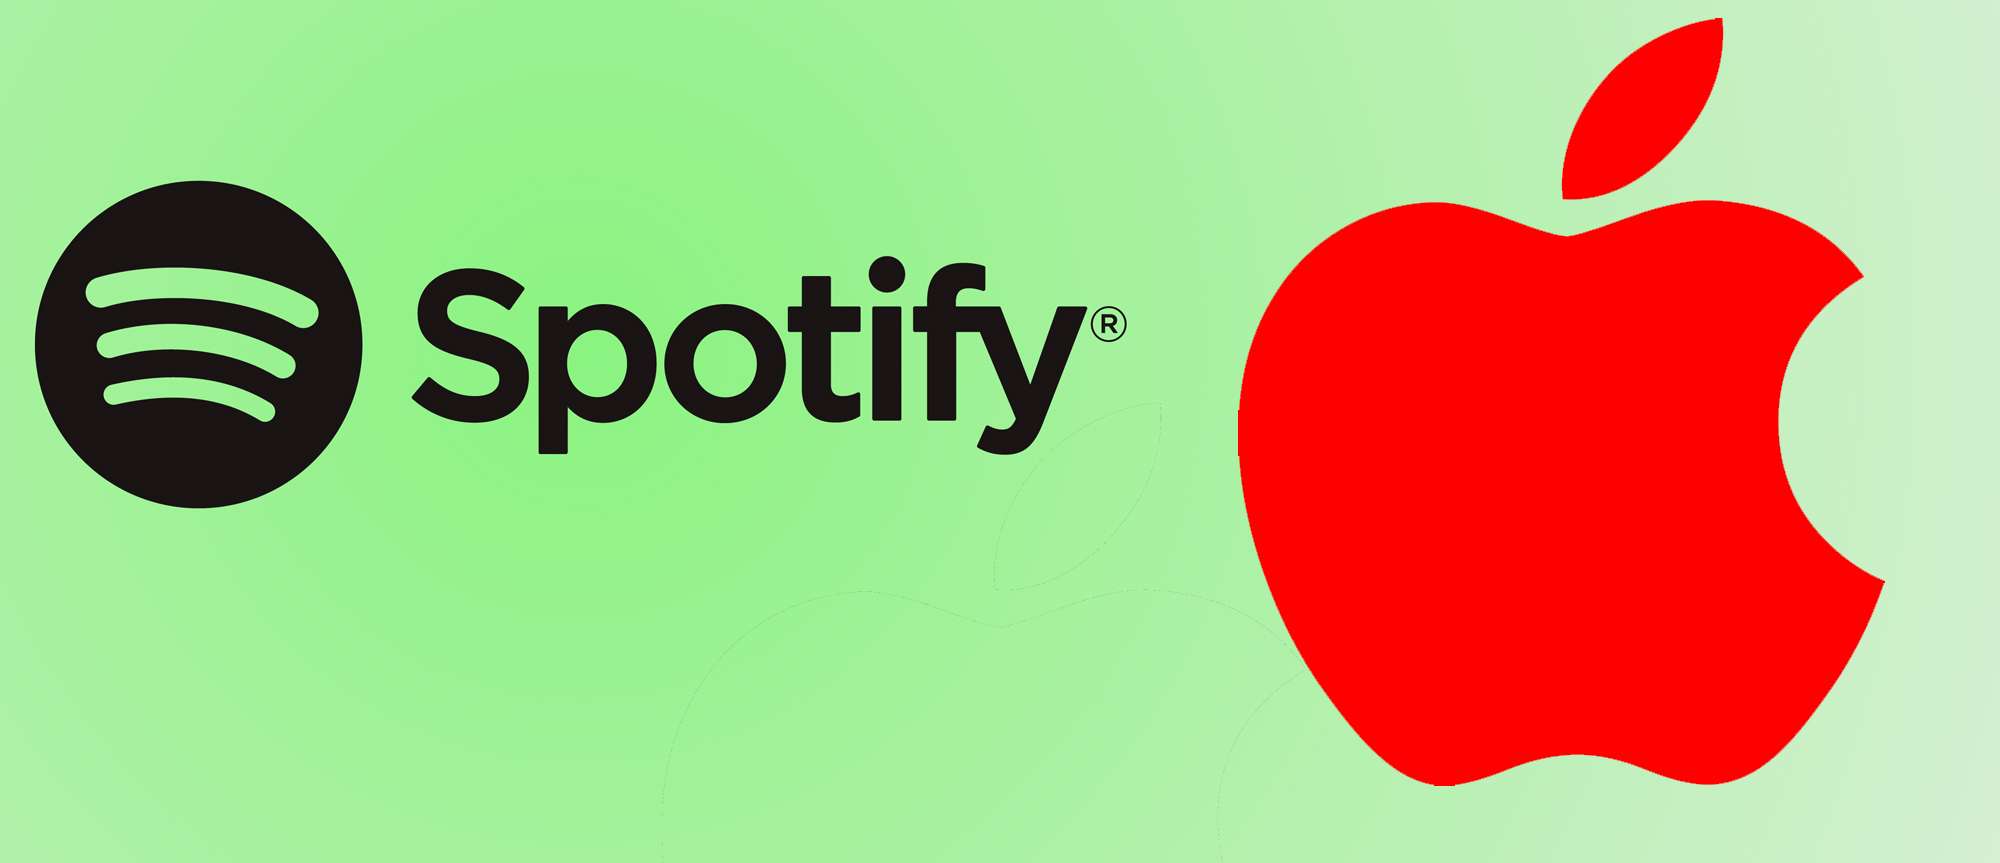 Apple в очередной раз блокирует обновление приложения Spotify для ЕС